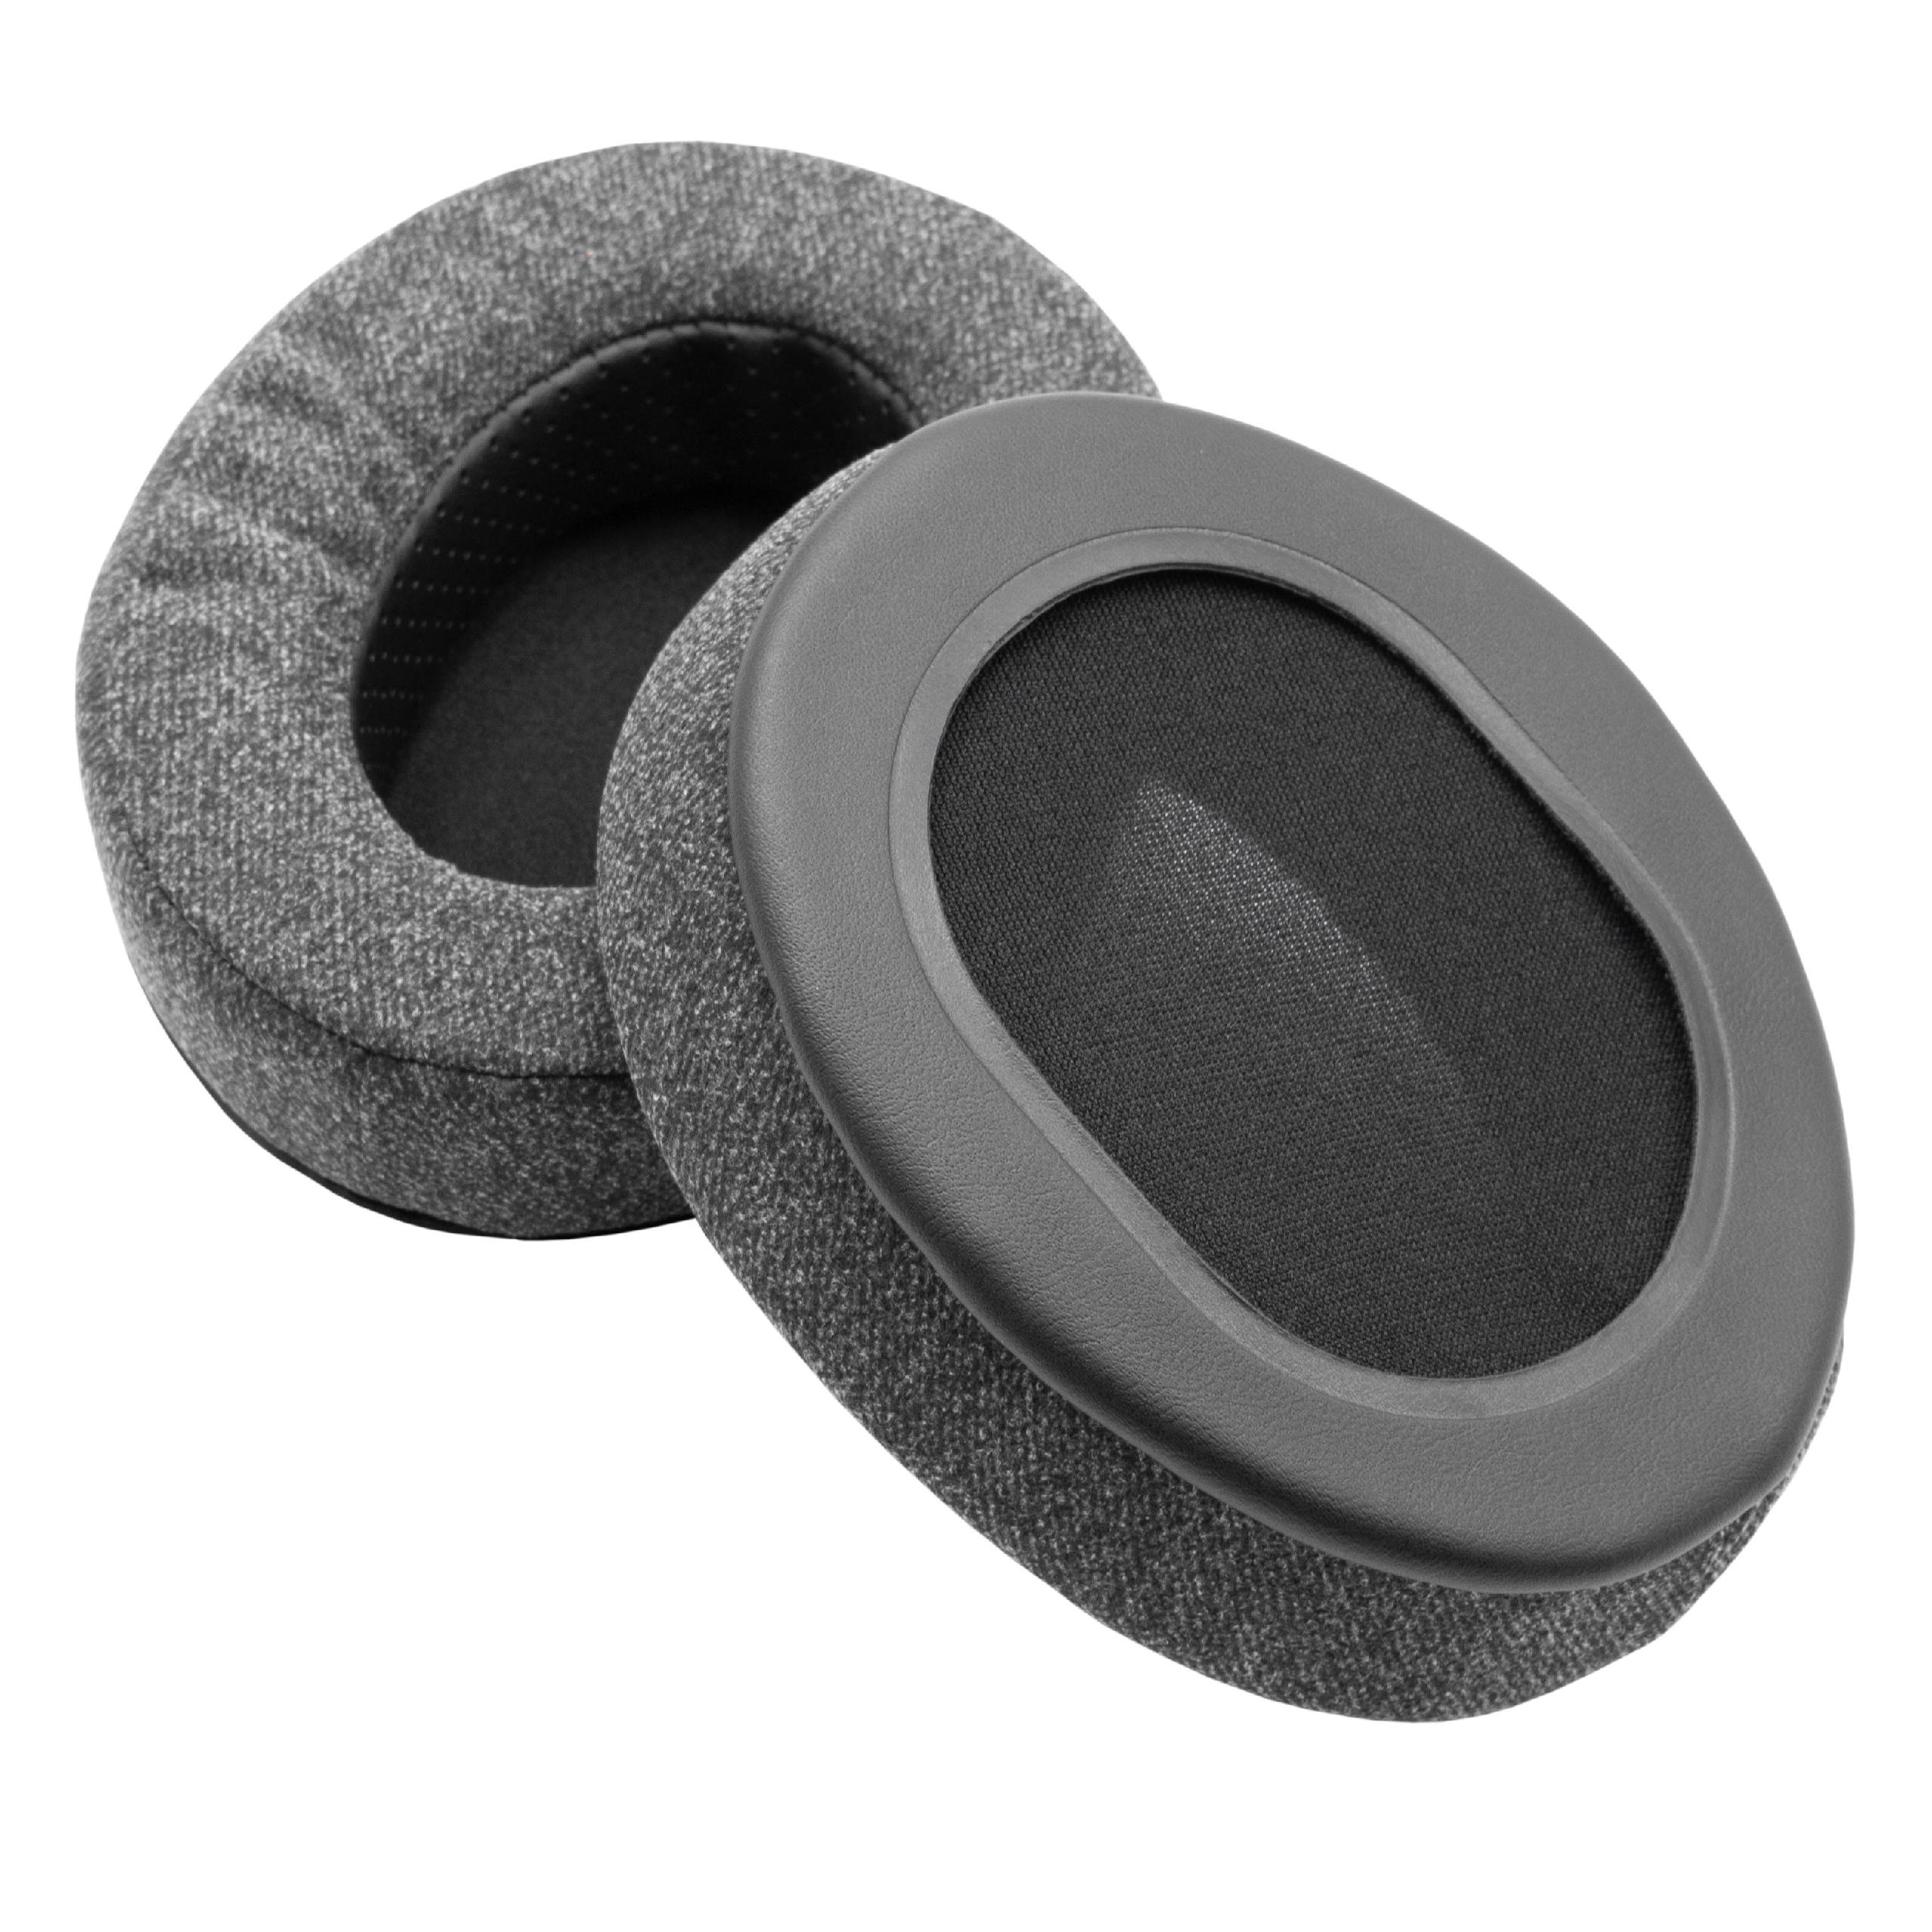 Almohadilla para auriculares Roland, Brainwavz RH-300 - poliuretano / espuma gris